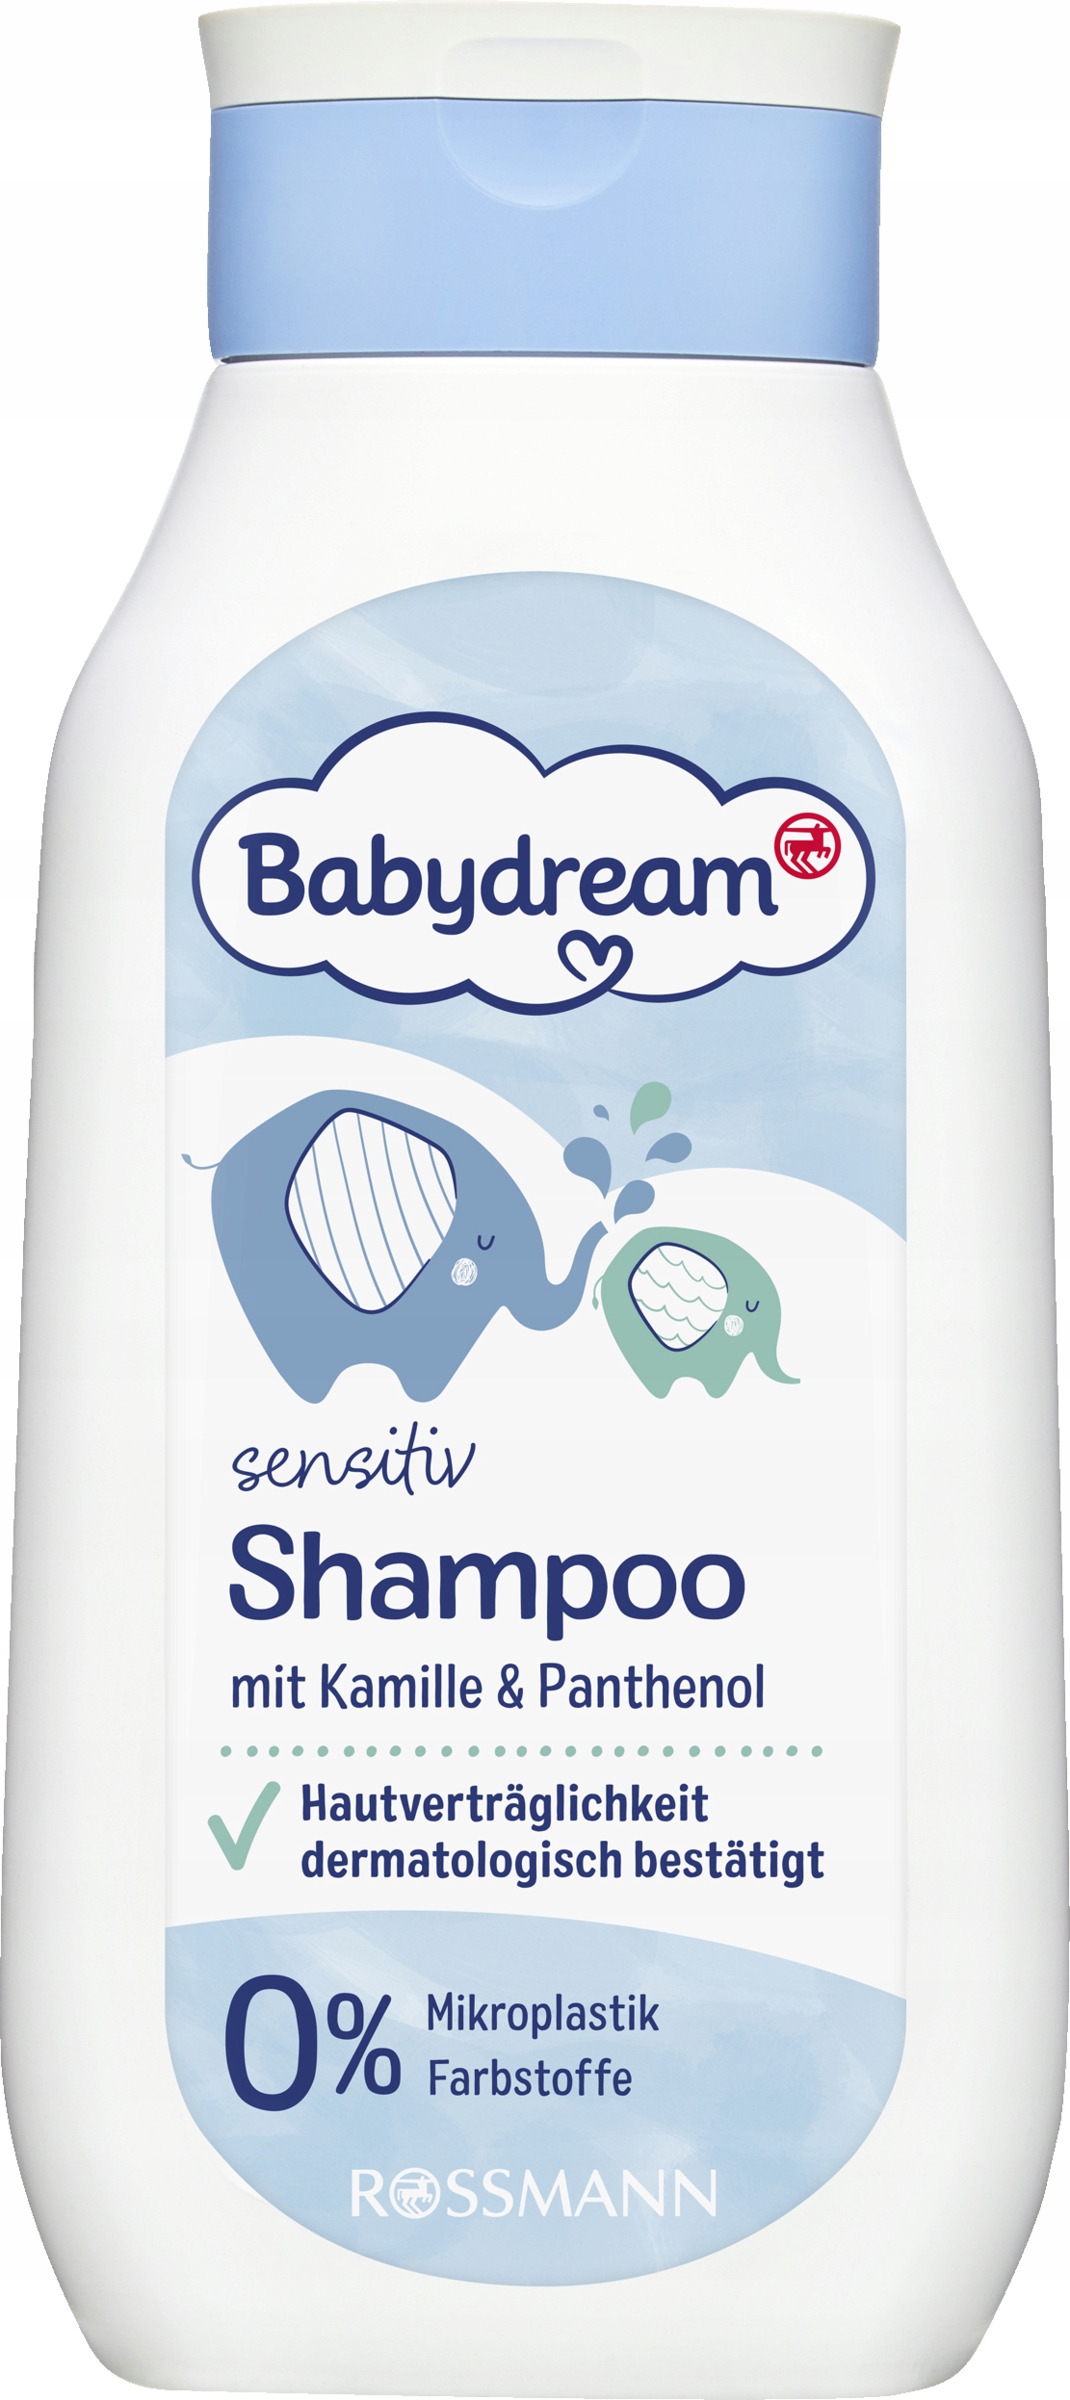 babydream szampon dzieci z kaczuszkami